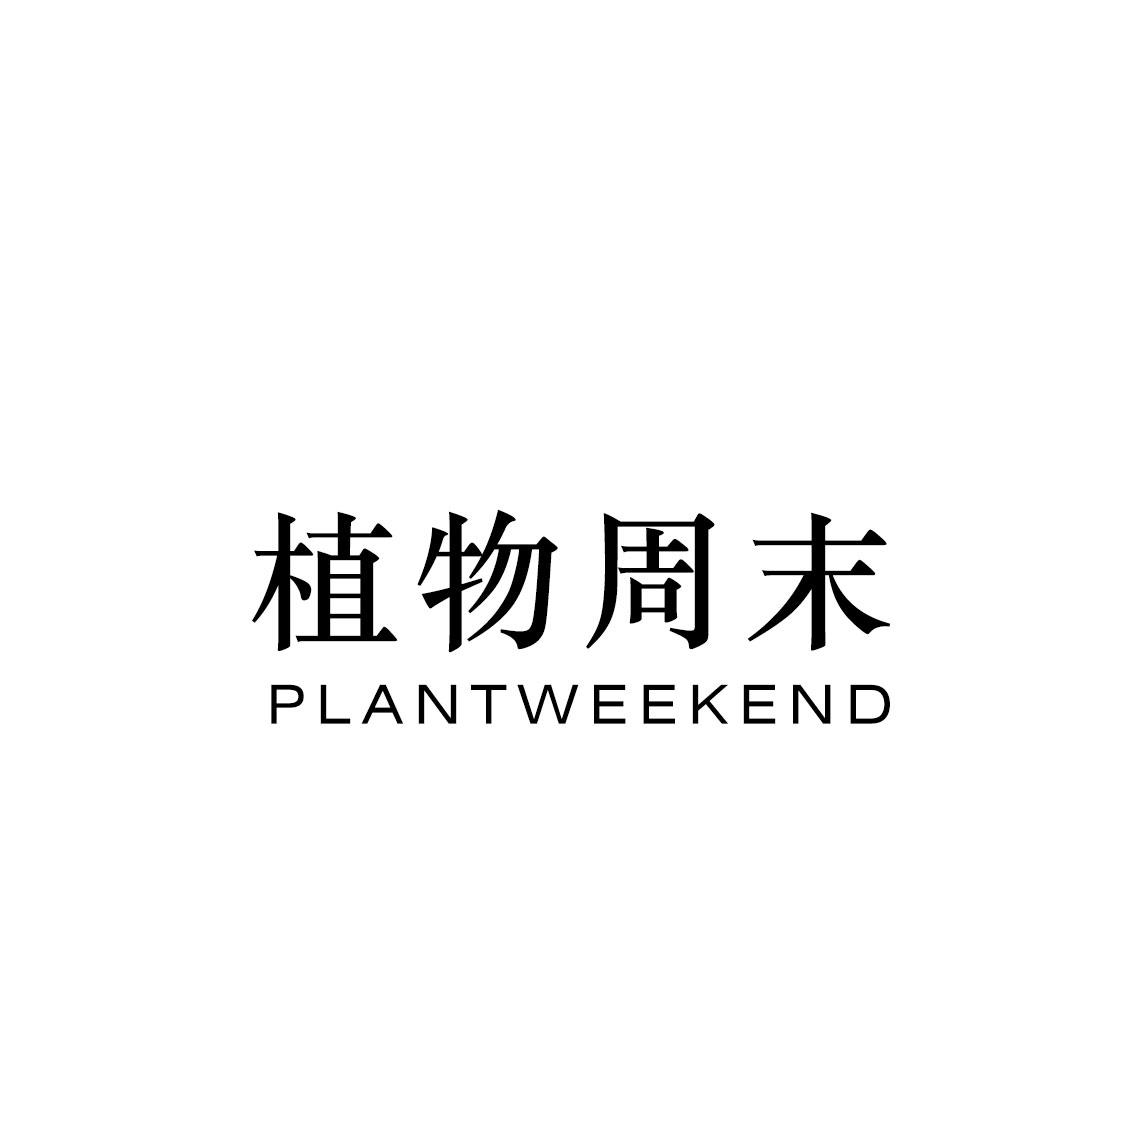 植物周末 PLANTWEEKEND